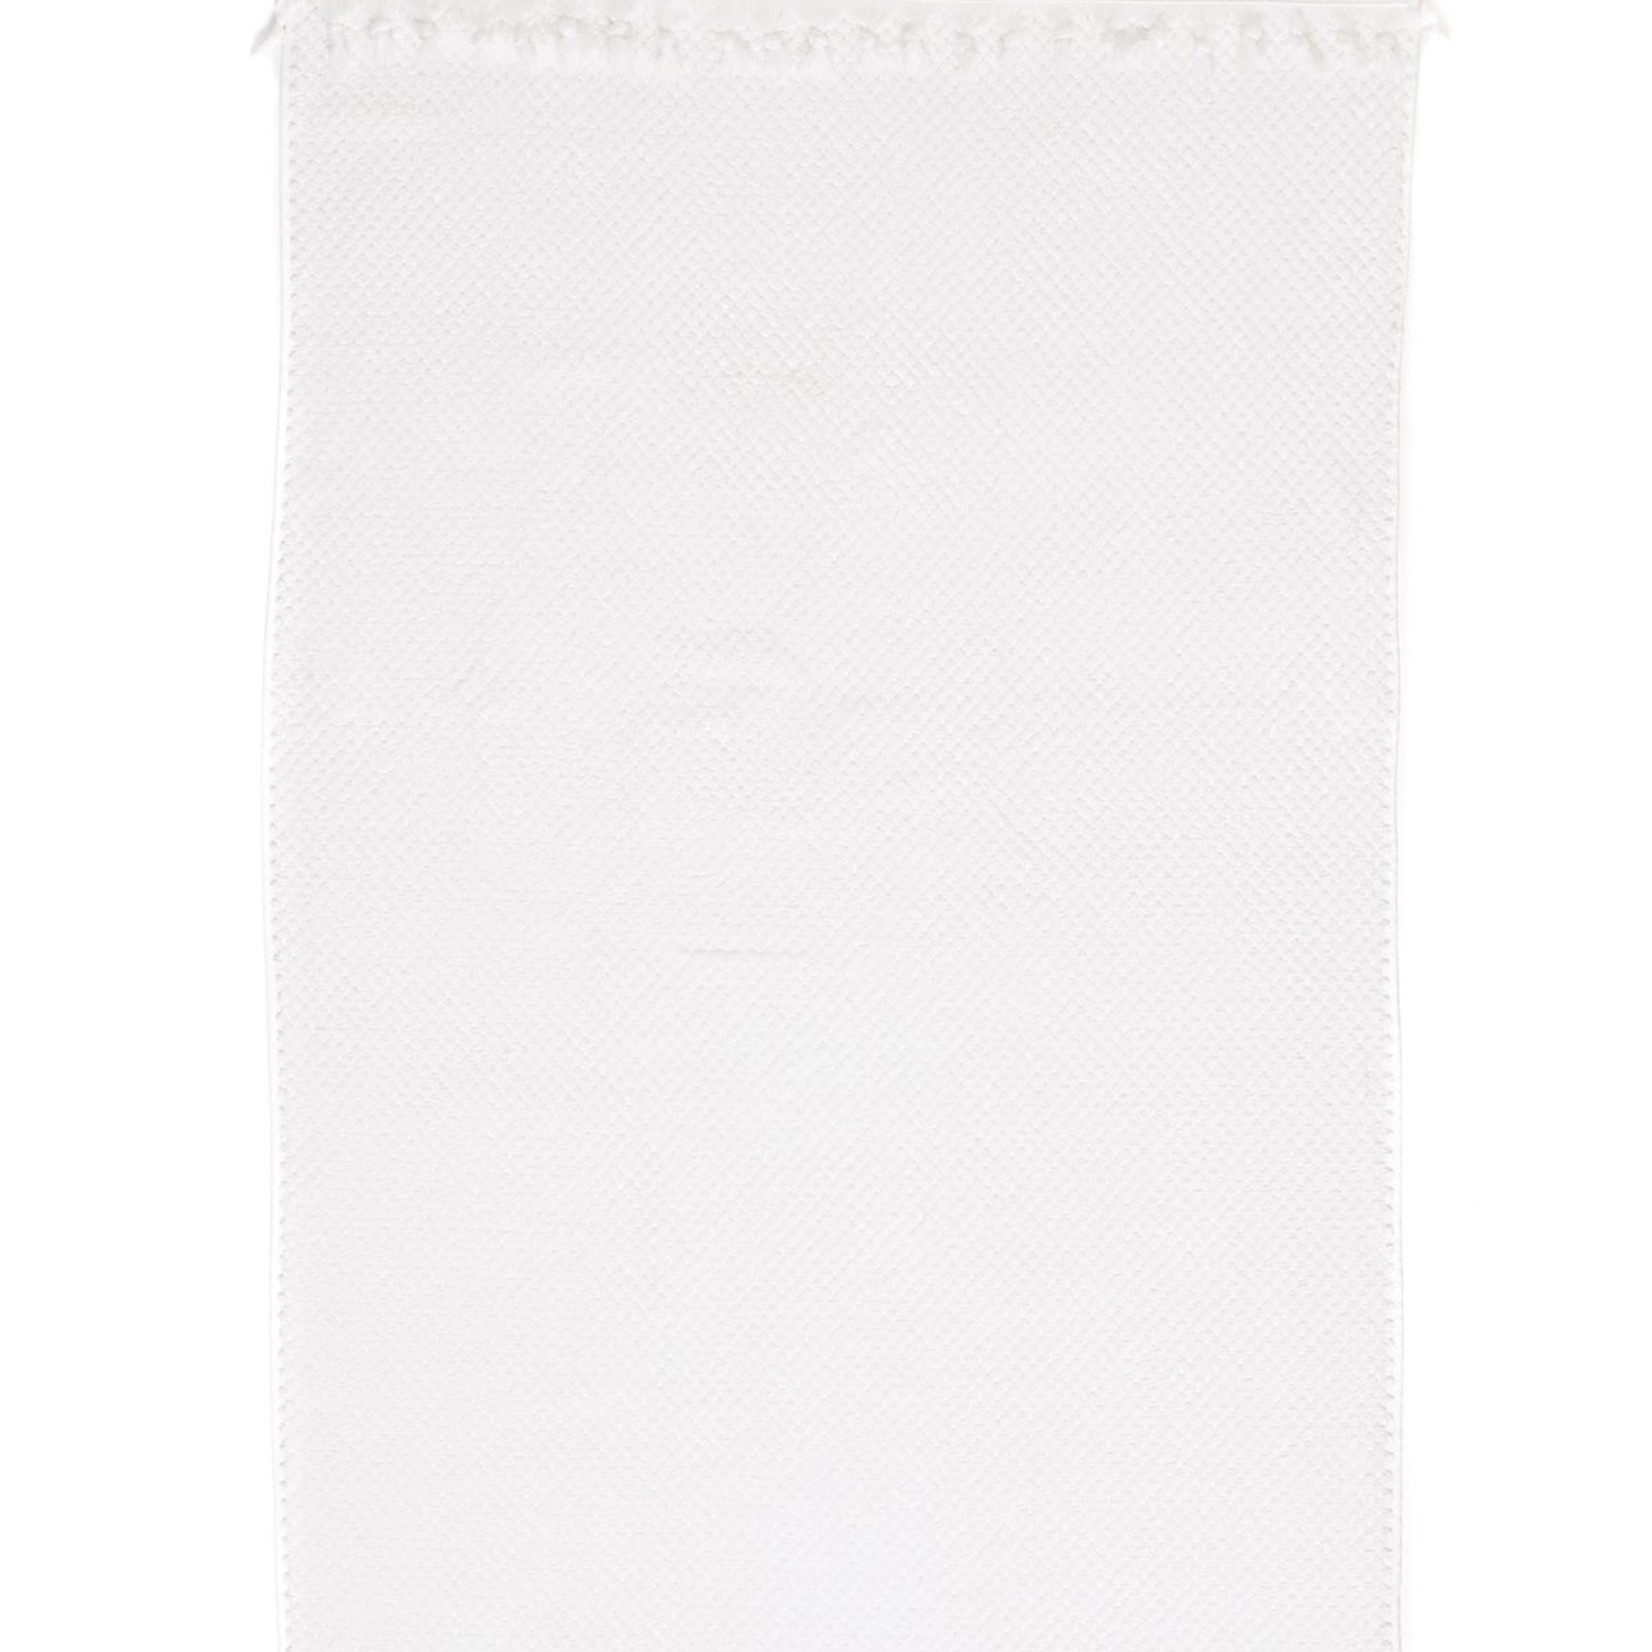 Tofino Towel Company Crescent Bath Towel